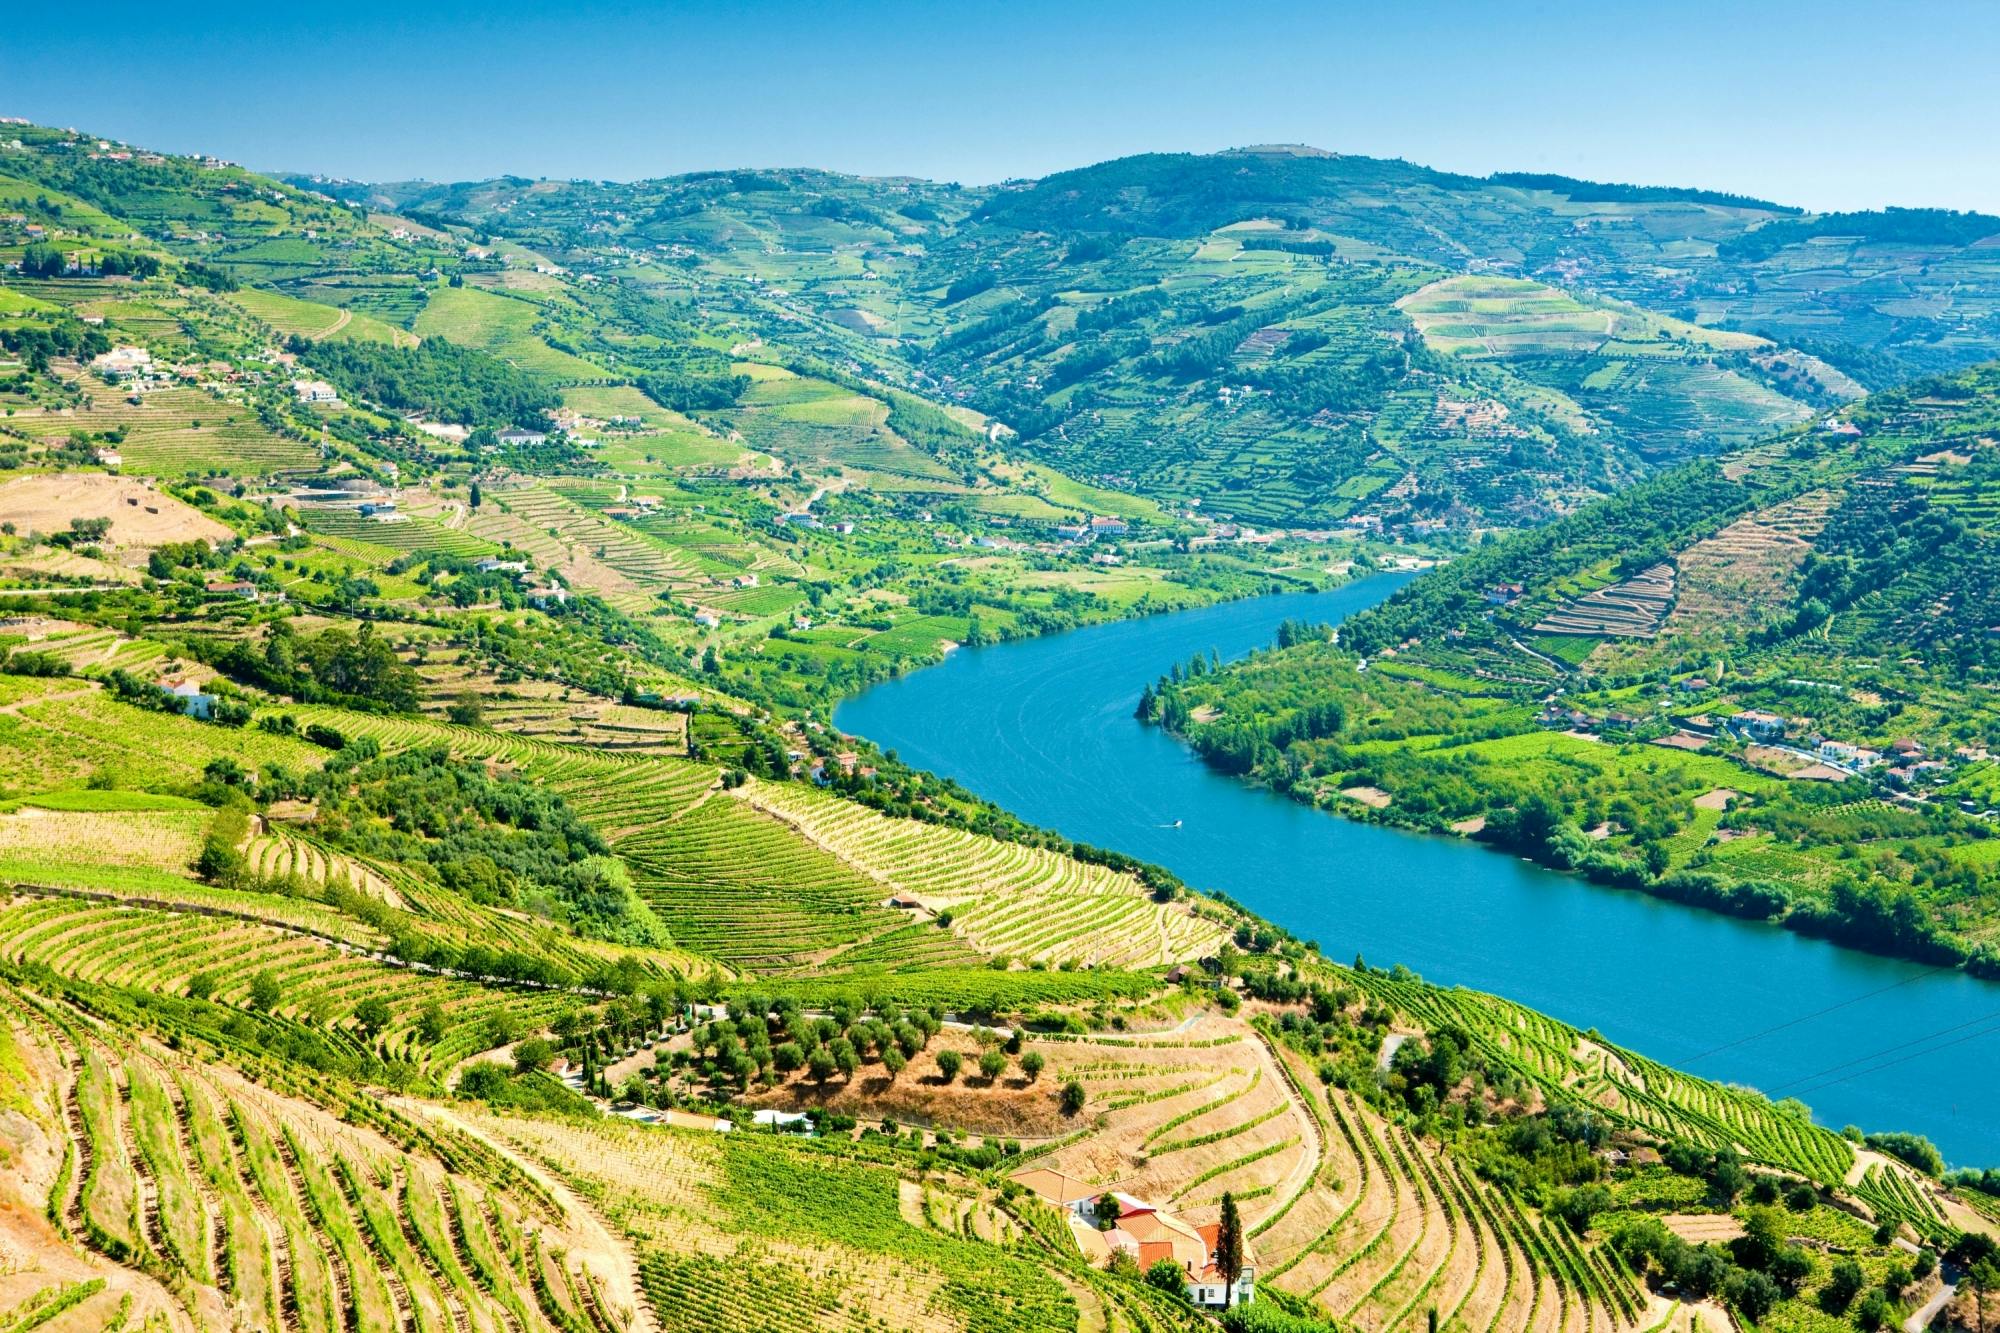 Visita guiada ao Vale do Douro com prova de vinhos, almoço e cruzeiro fluvial a partir do Porto